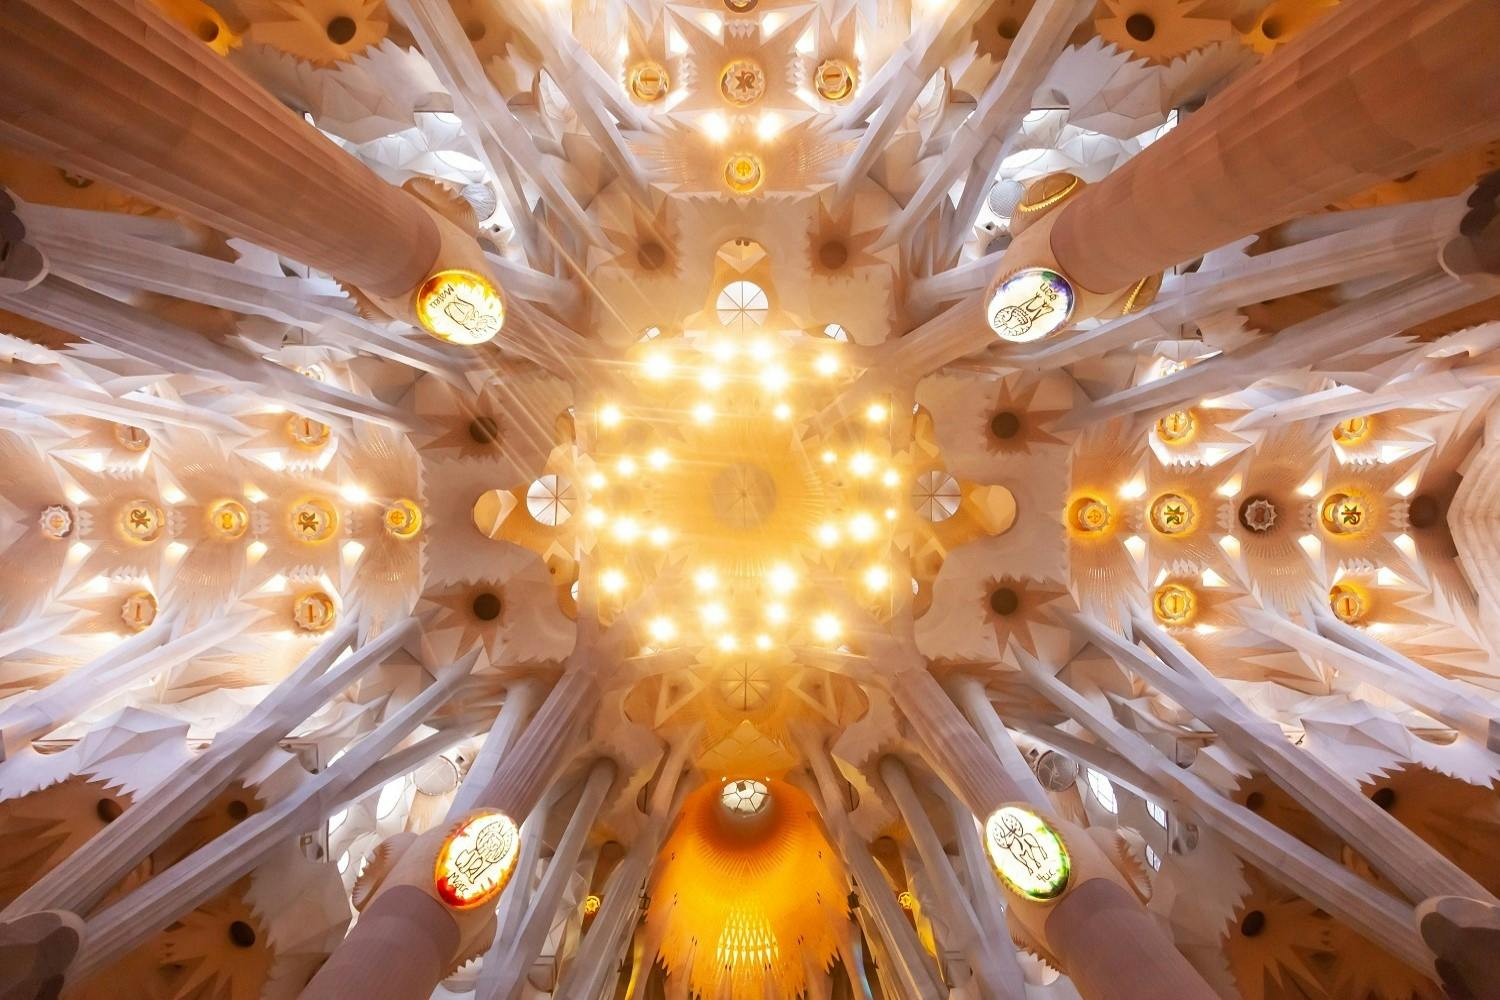 Billetter og guidet besøg i Sagrada Familia